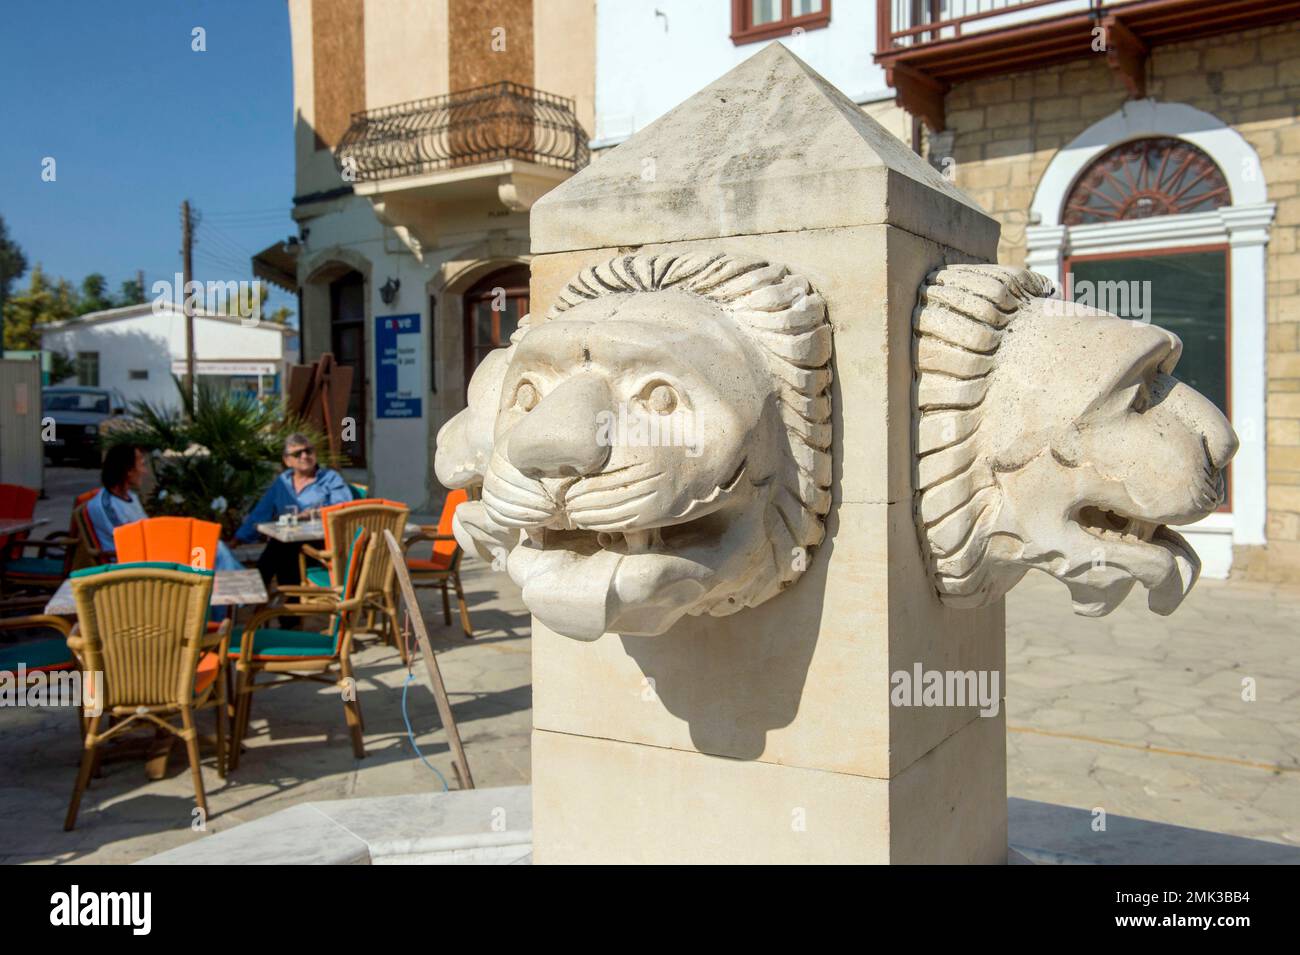 La fontana della testa del Leone nella piazza del villaggio di Polis Chrysochou. Foto Stock